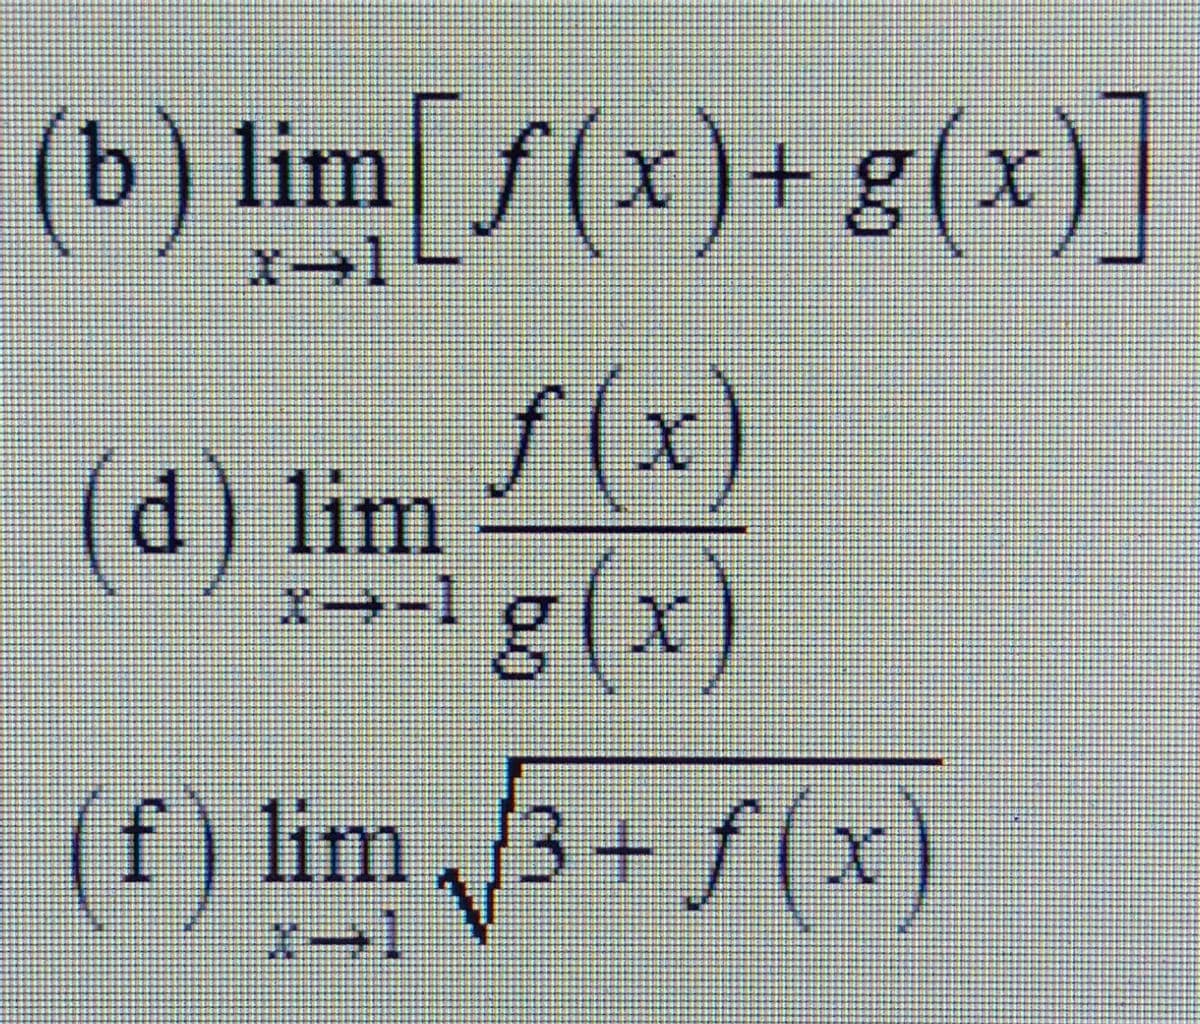 (b) lim f(x)+g(x
)]
f (x)
(d) lim
g(x)
(f) lim 3+f(x)
